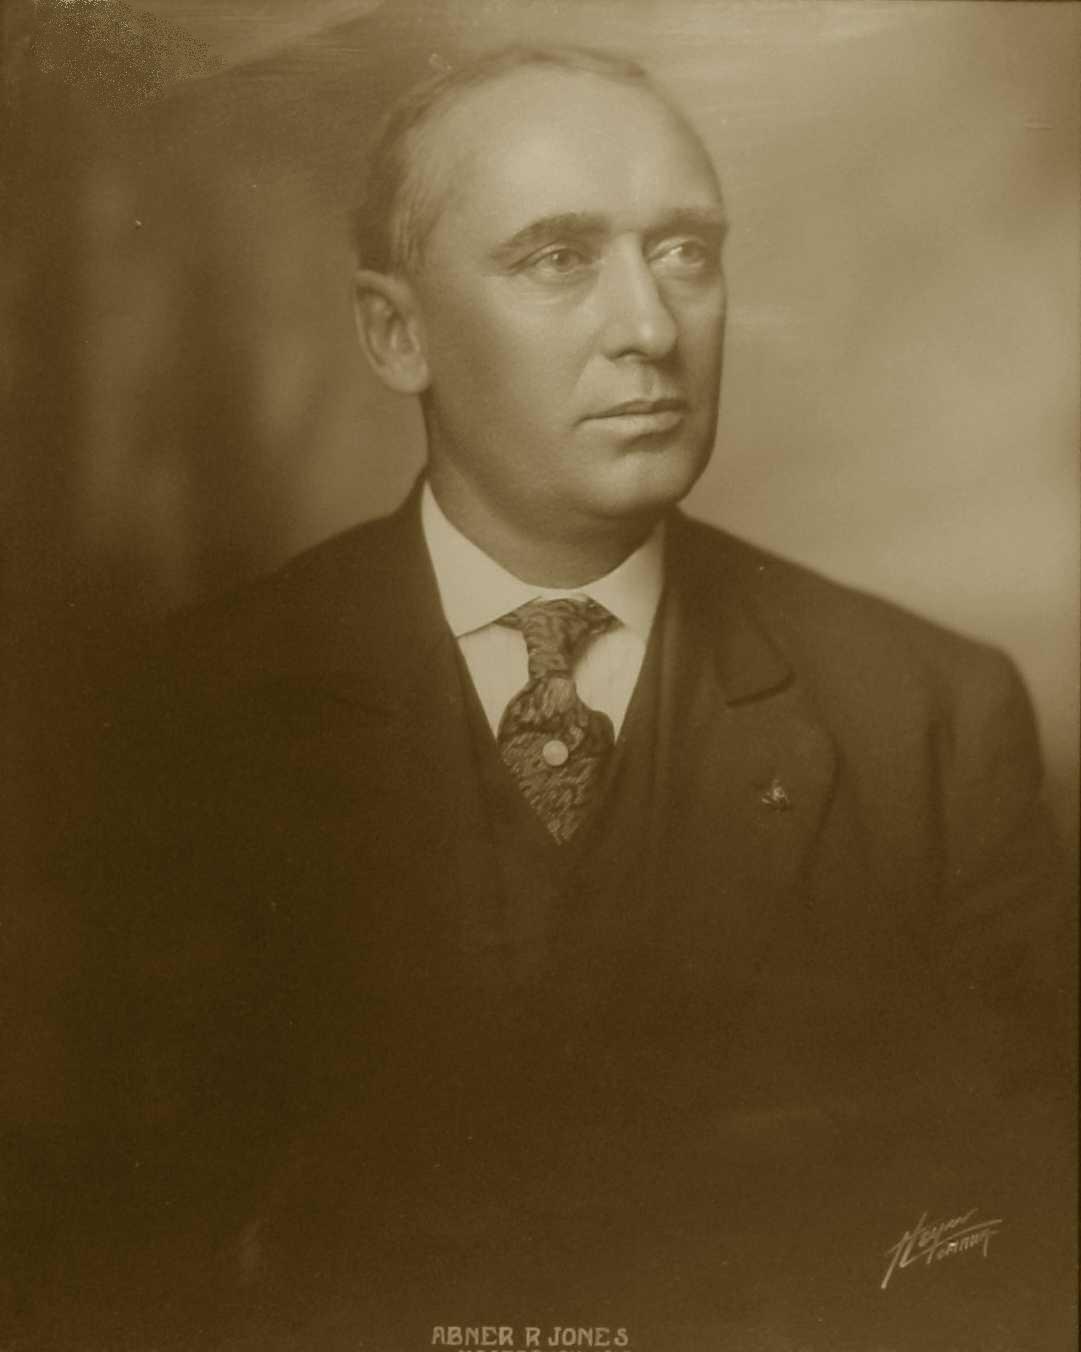 Abner R. Jones, 1914-1915